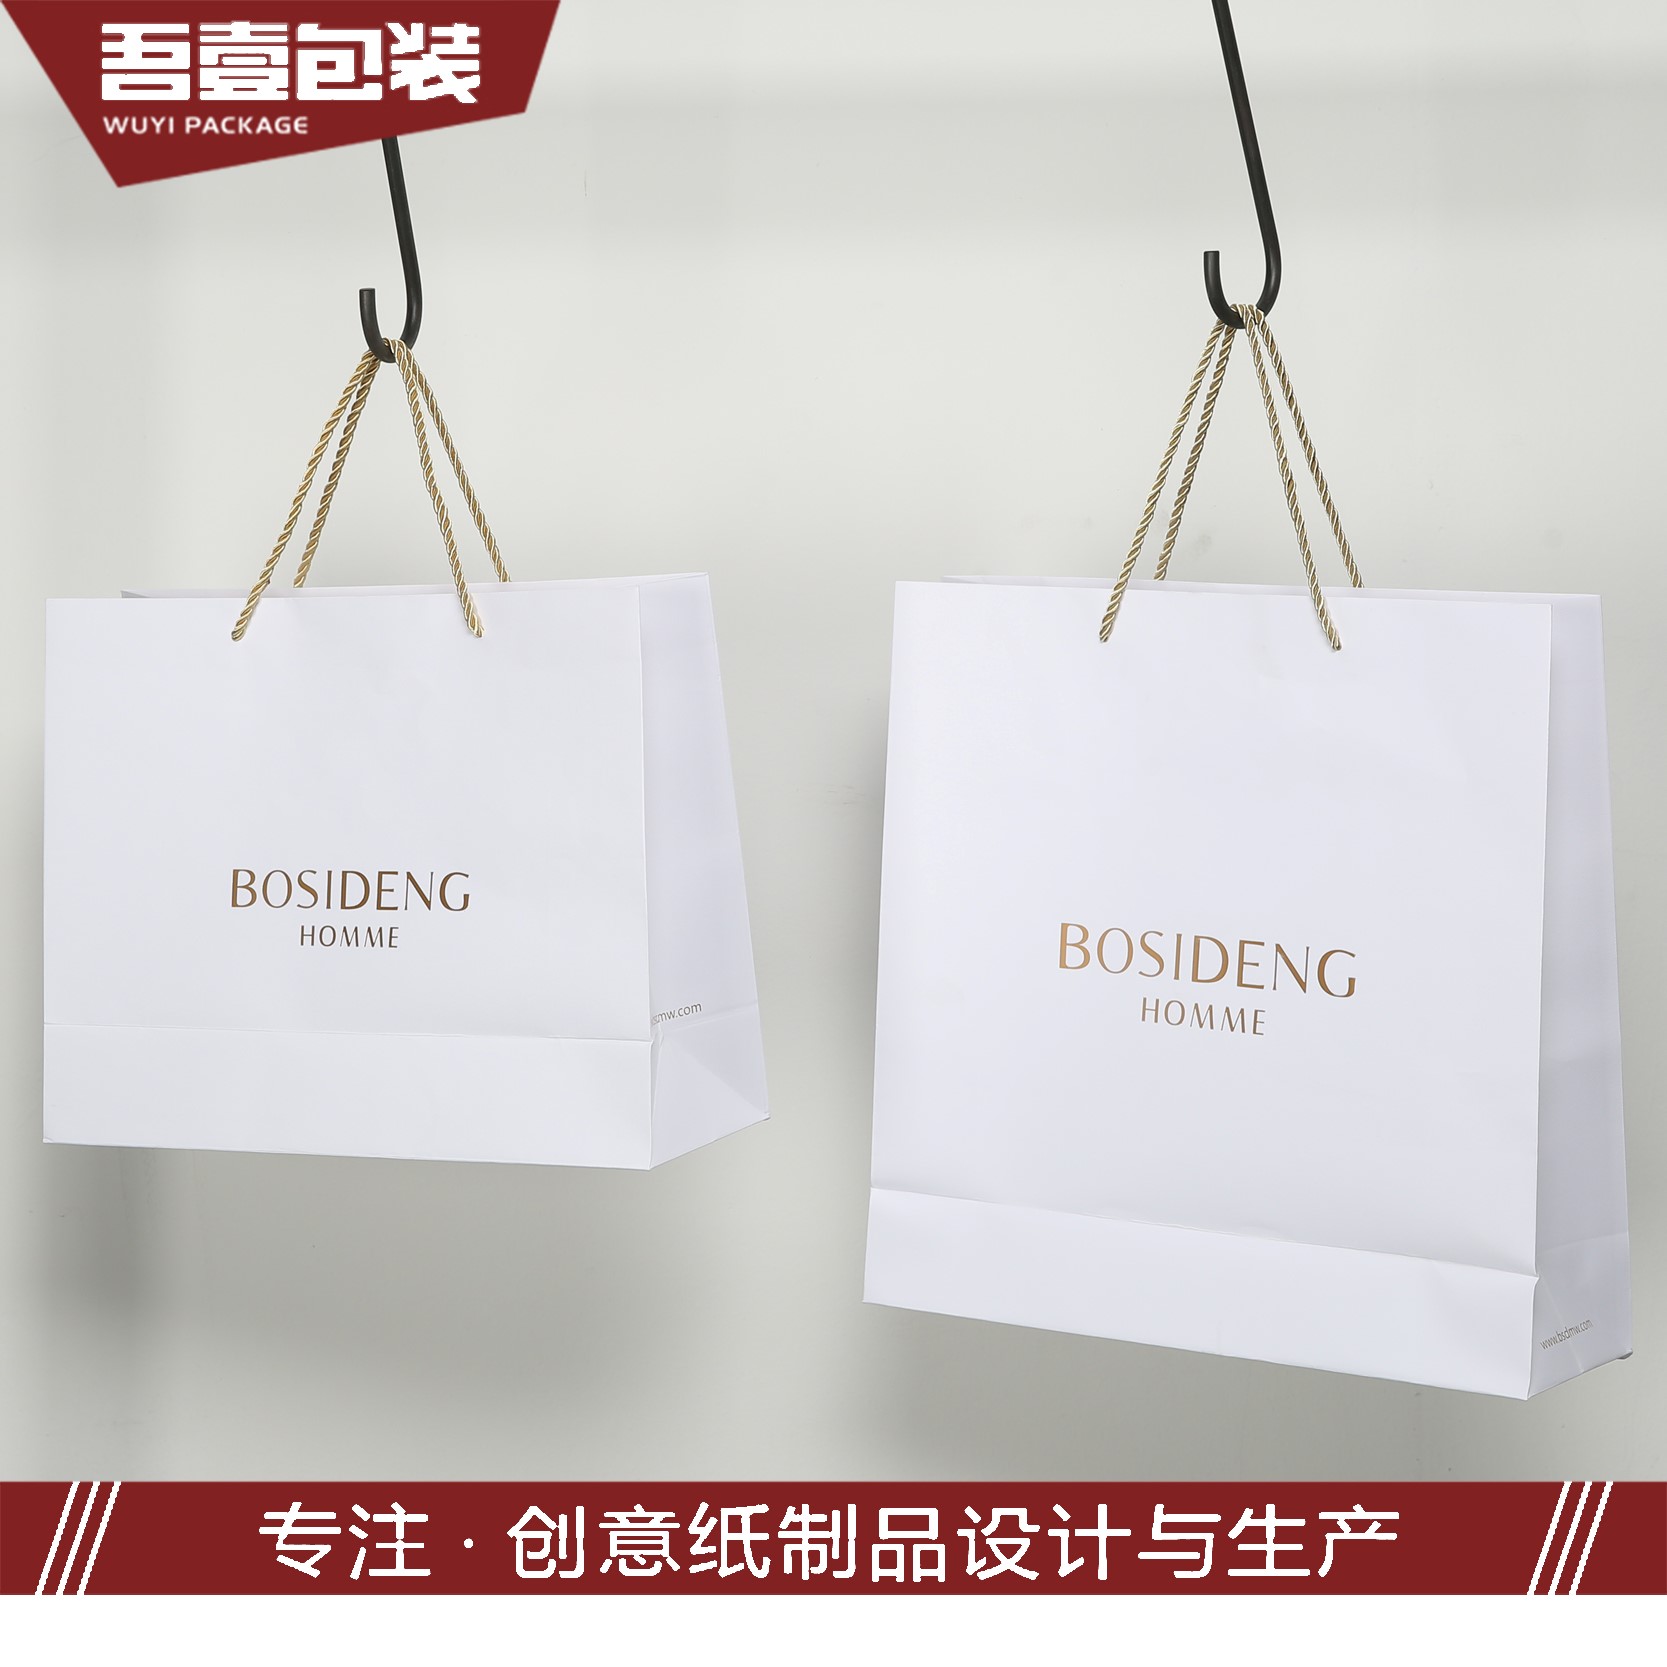 苏州吾壹包装彩印有限公司将亮相CIPPME上海包装展